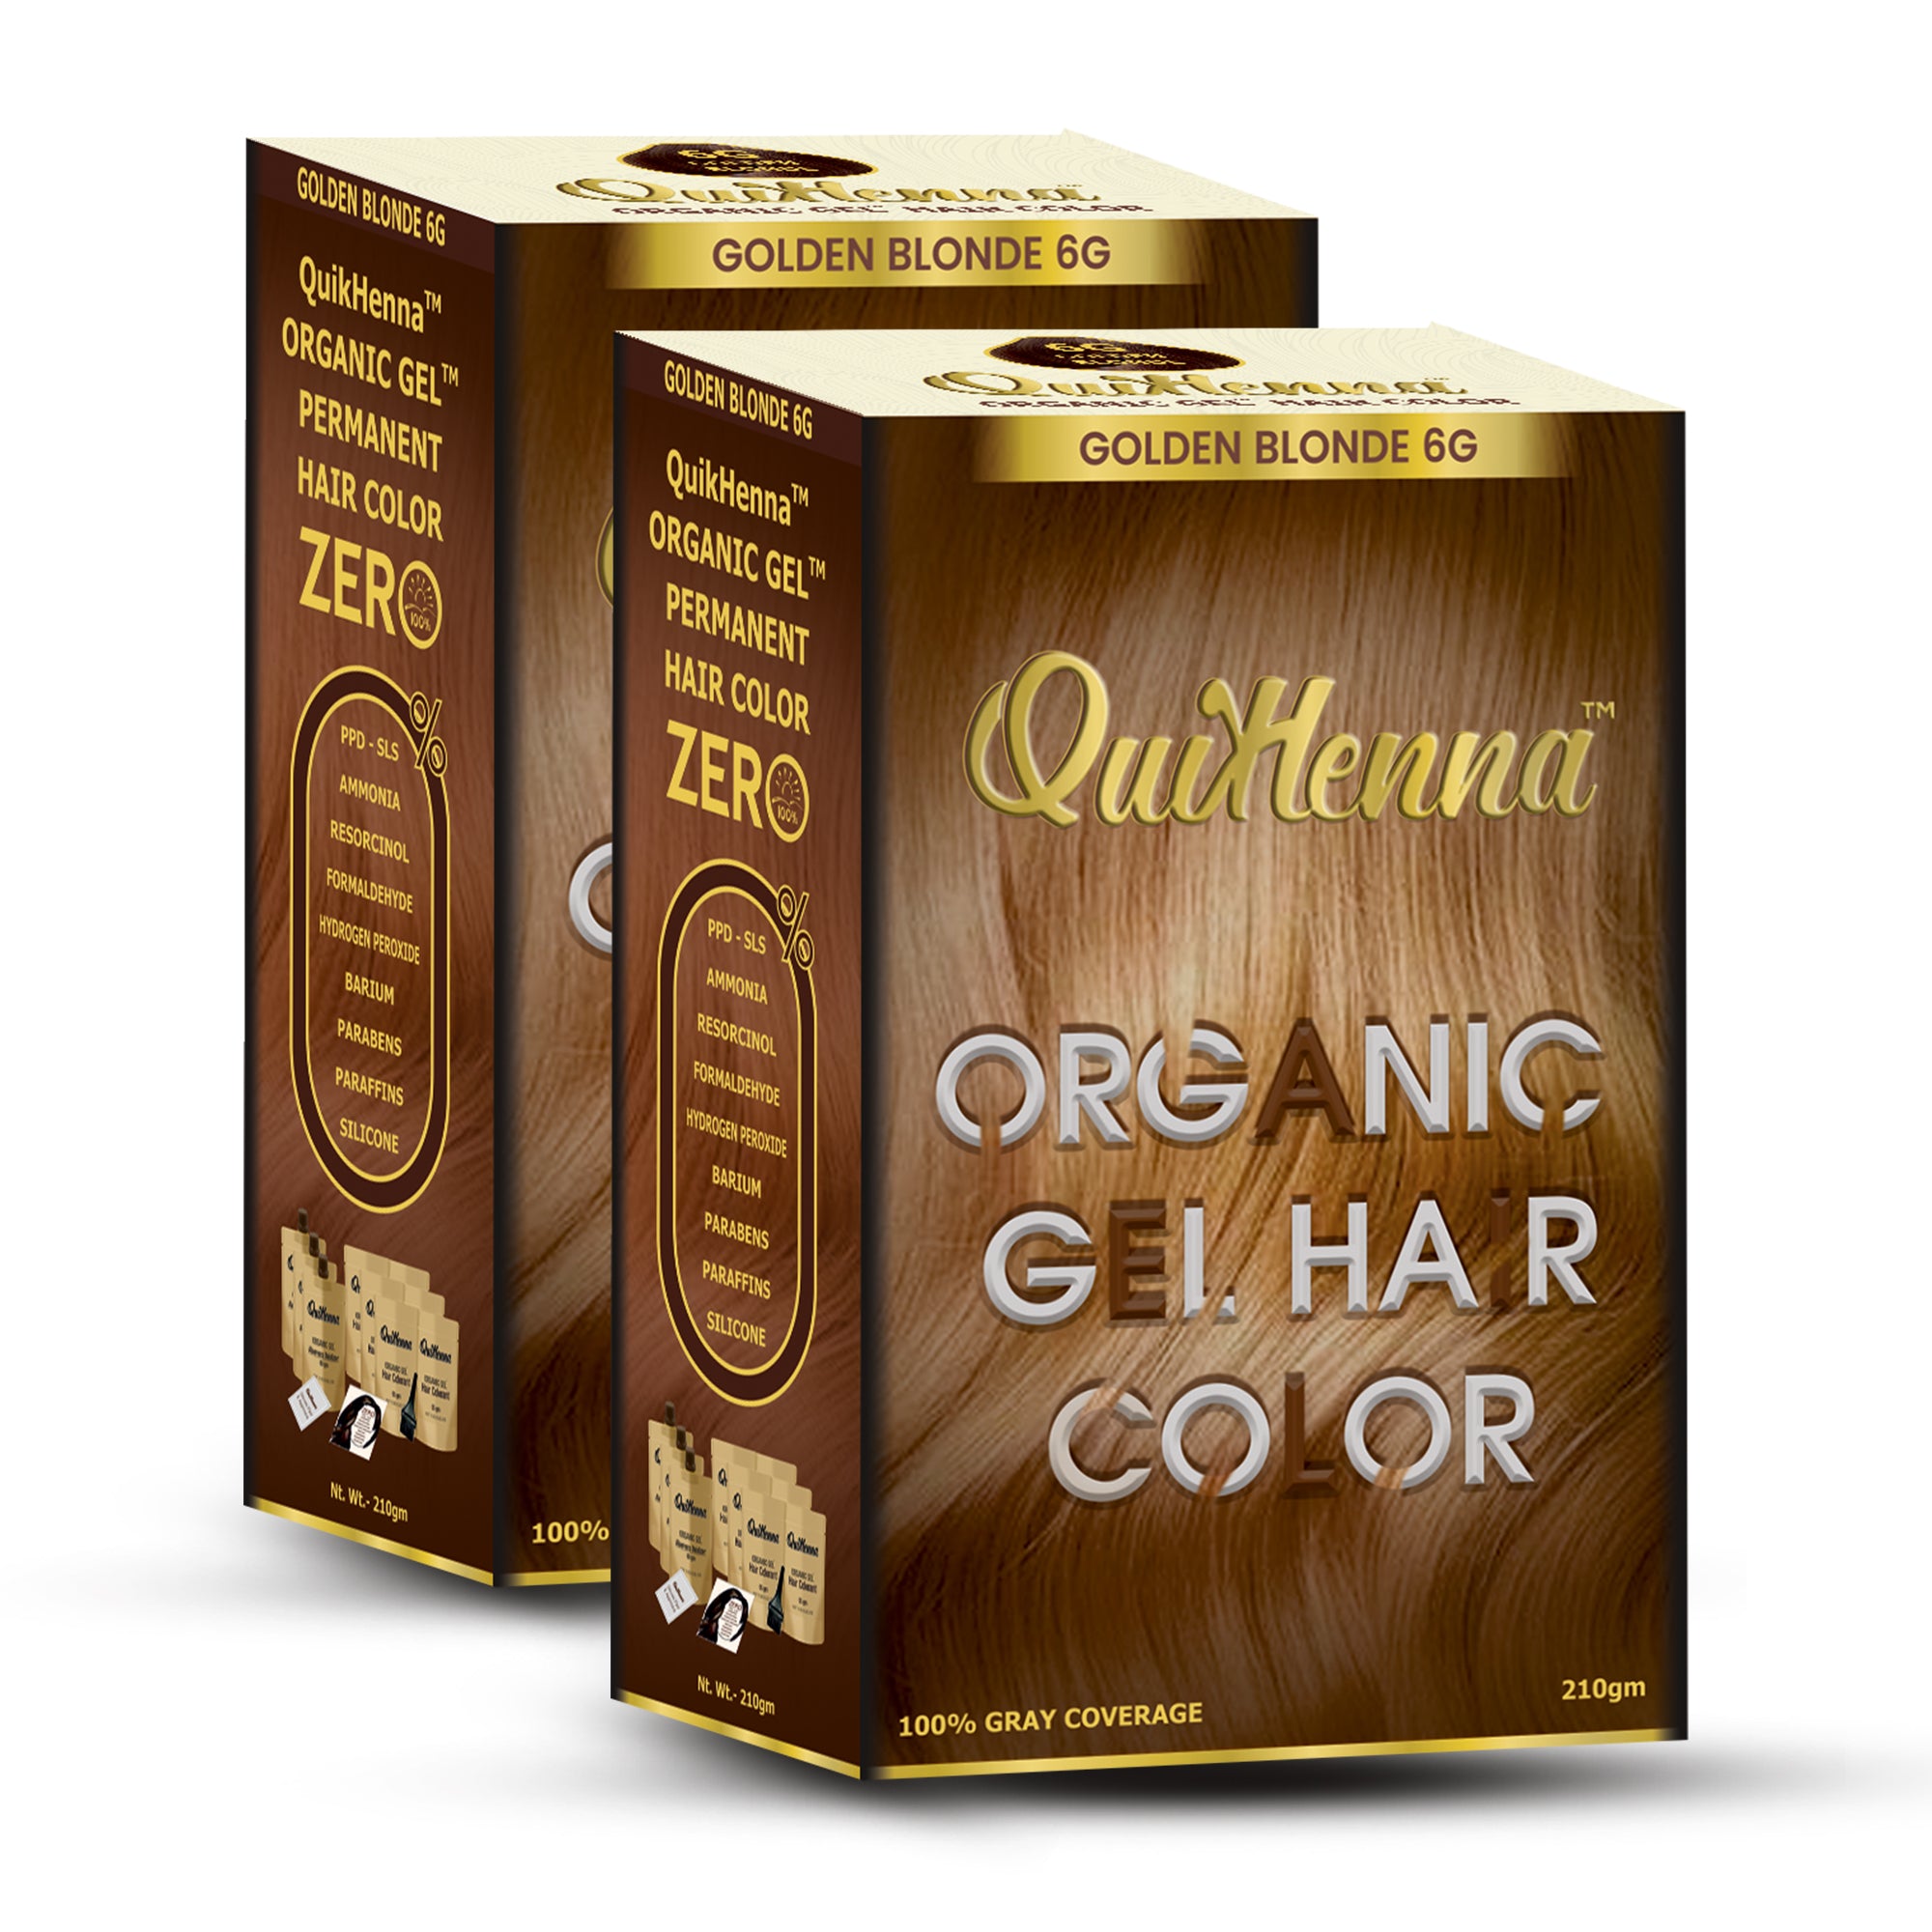 QuikHenna Organic Gel Hair Colour - PPD & Ammonia Free Permanent Natural Hair Color Dye 210gm